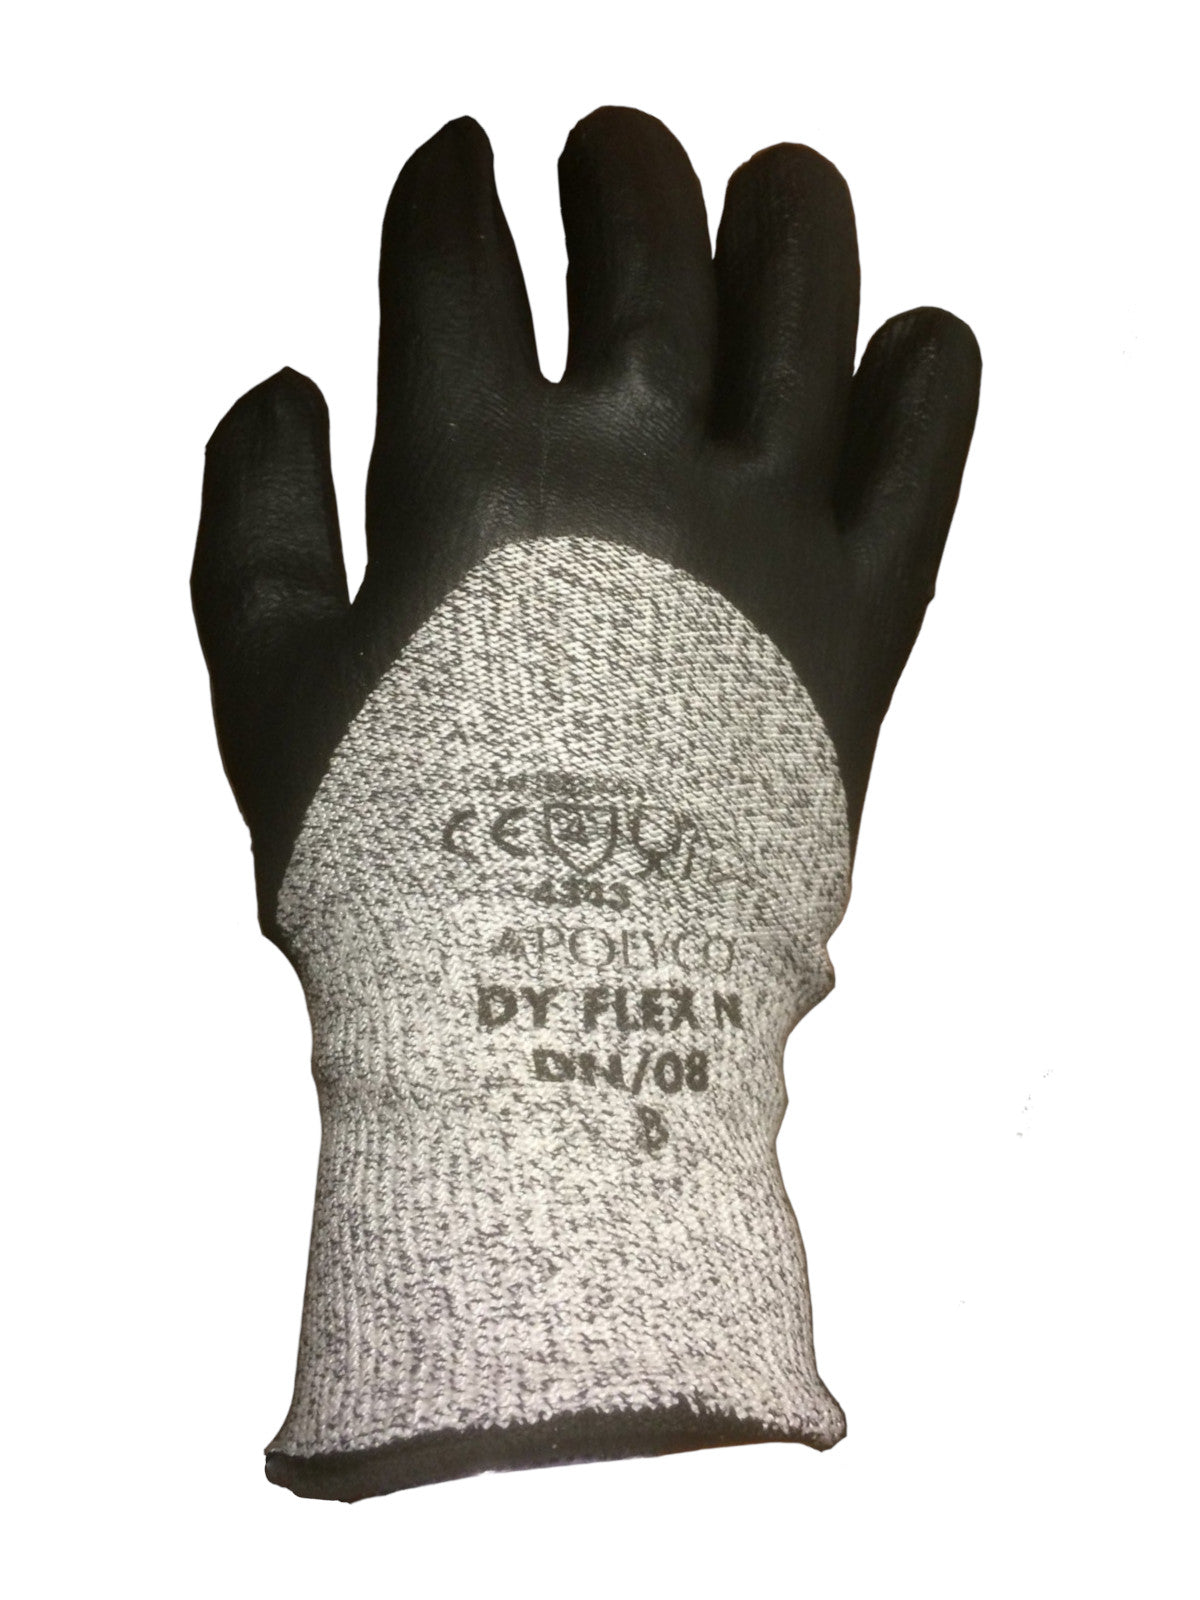 Polyco DyFlex N Dyneema Safety Gloves Cut 3 Resistant 3/4 Nitrile Coating